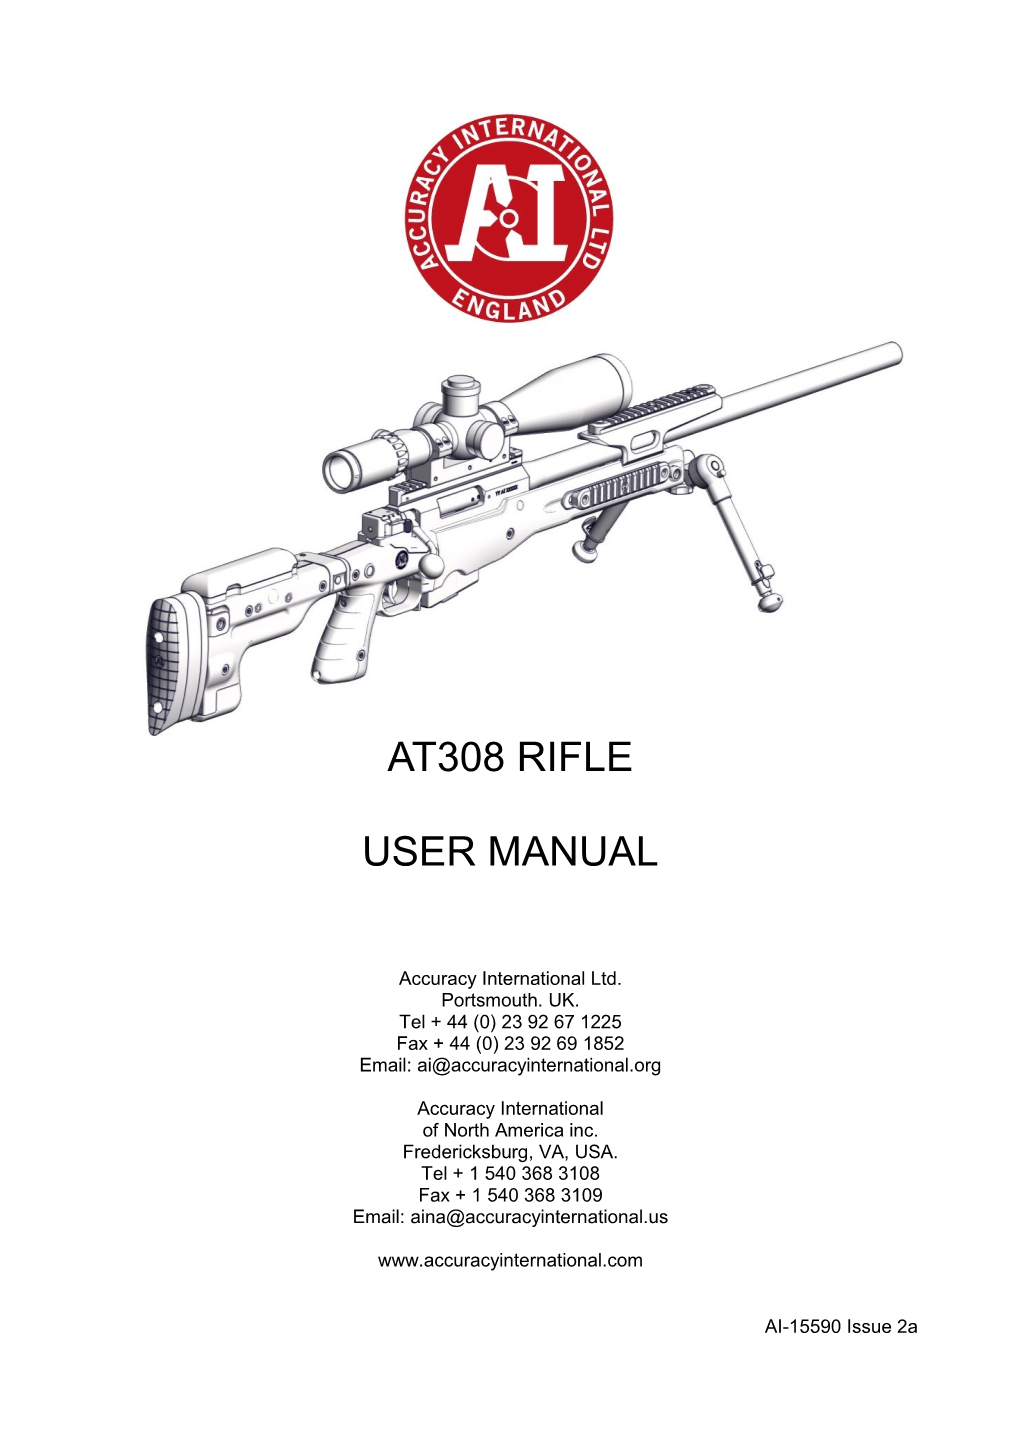 At308 Rifle User Manual